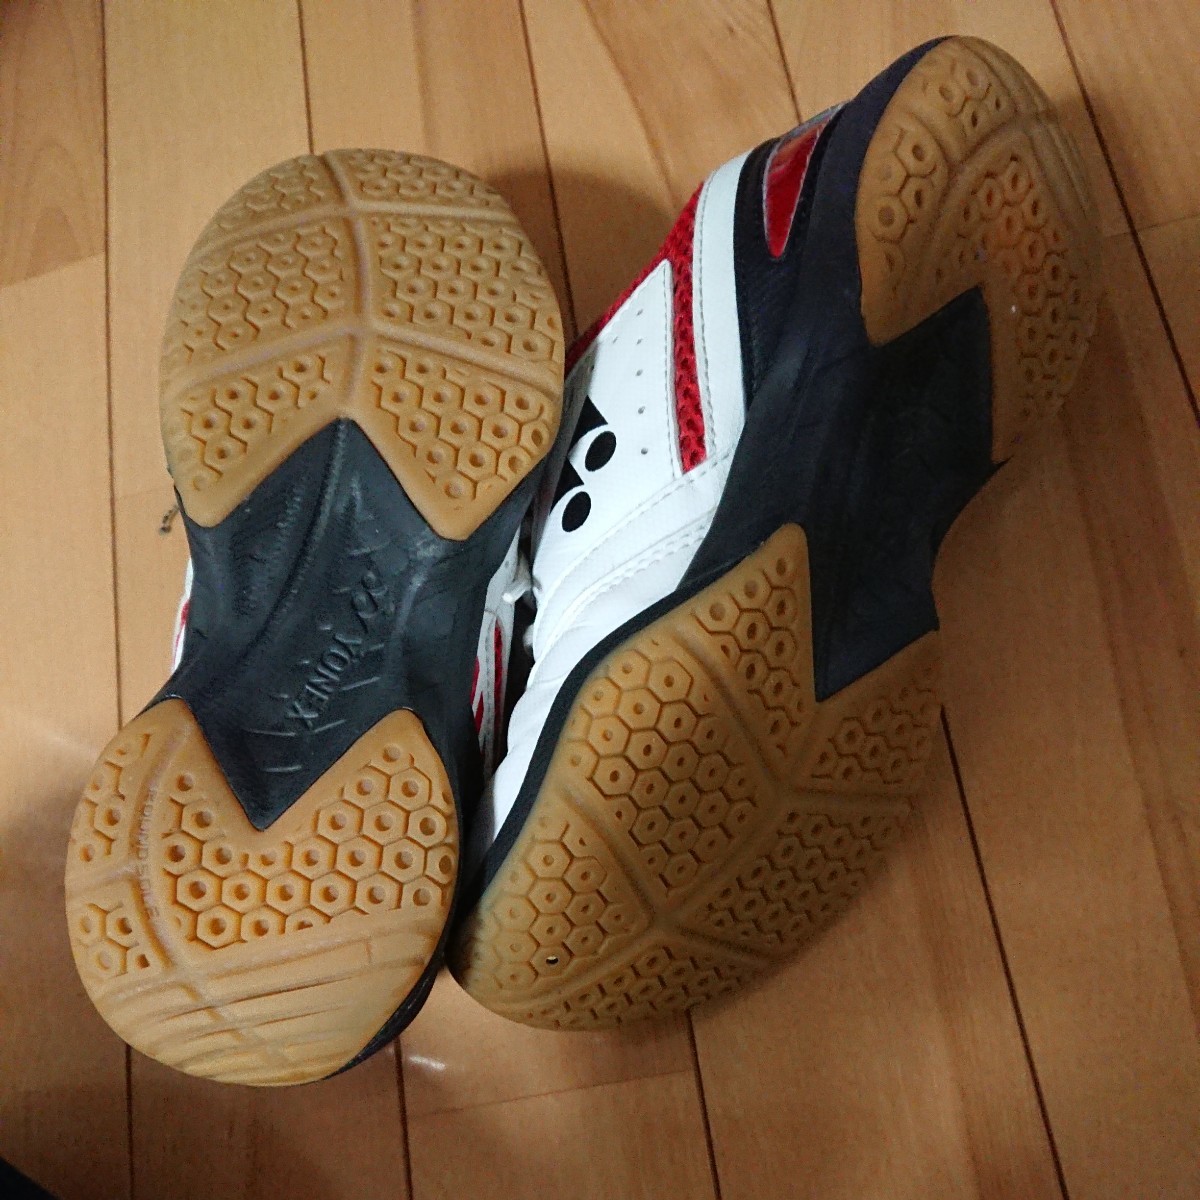  Yonex badminton shoes 21cm